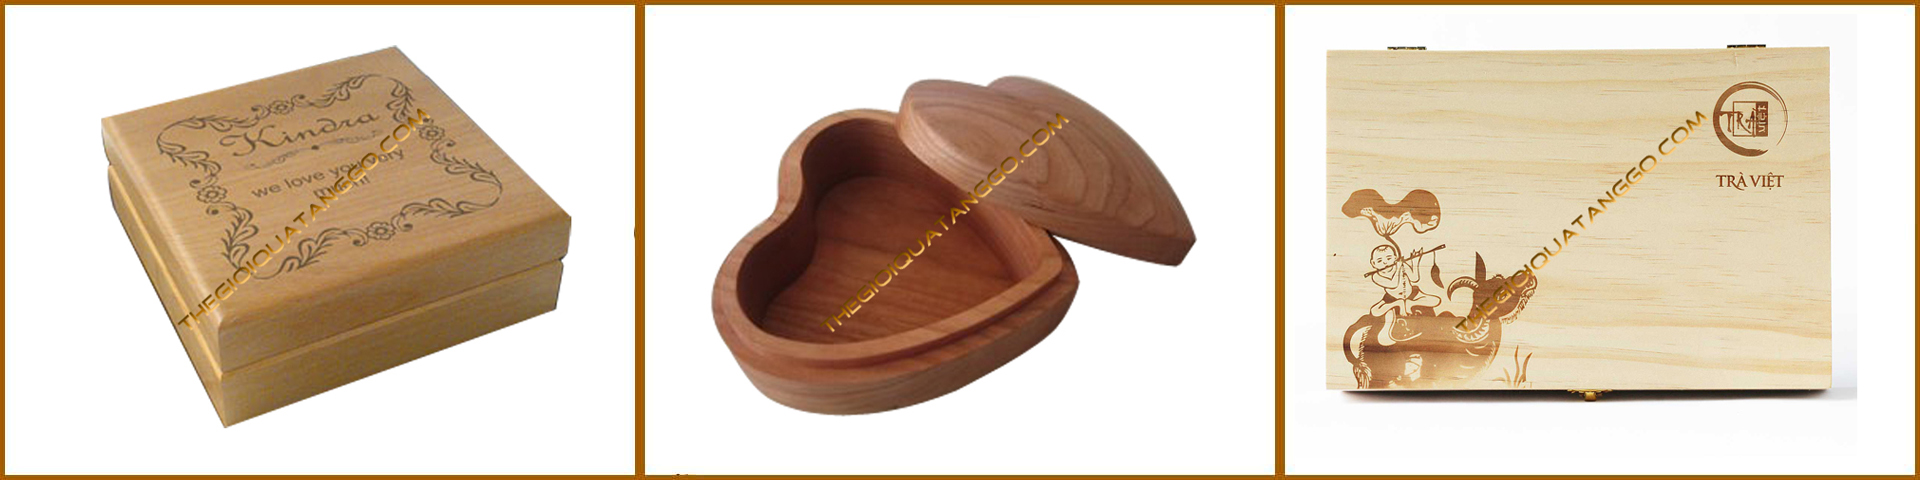 Sản phẩm quà tặng gỗ rất đa dạng và phong phú